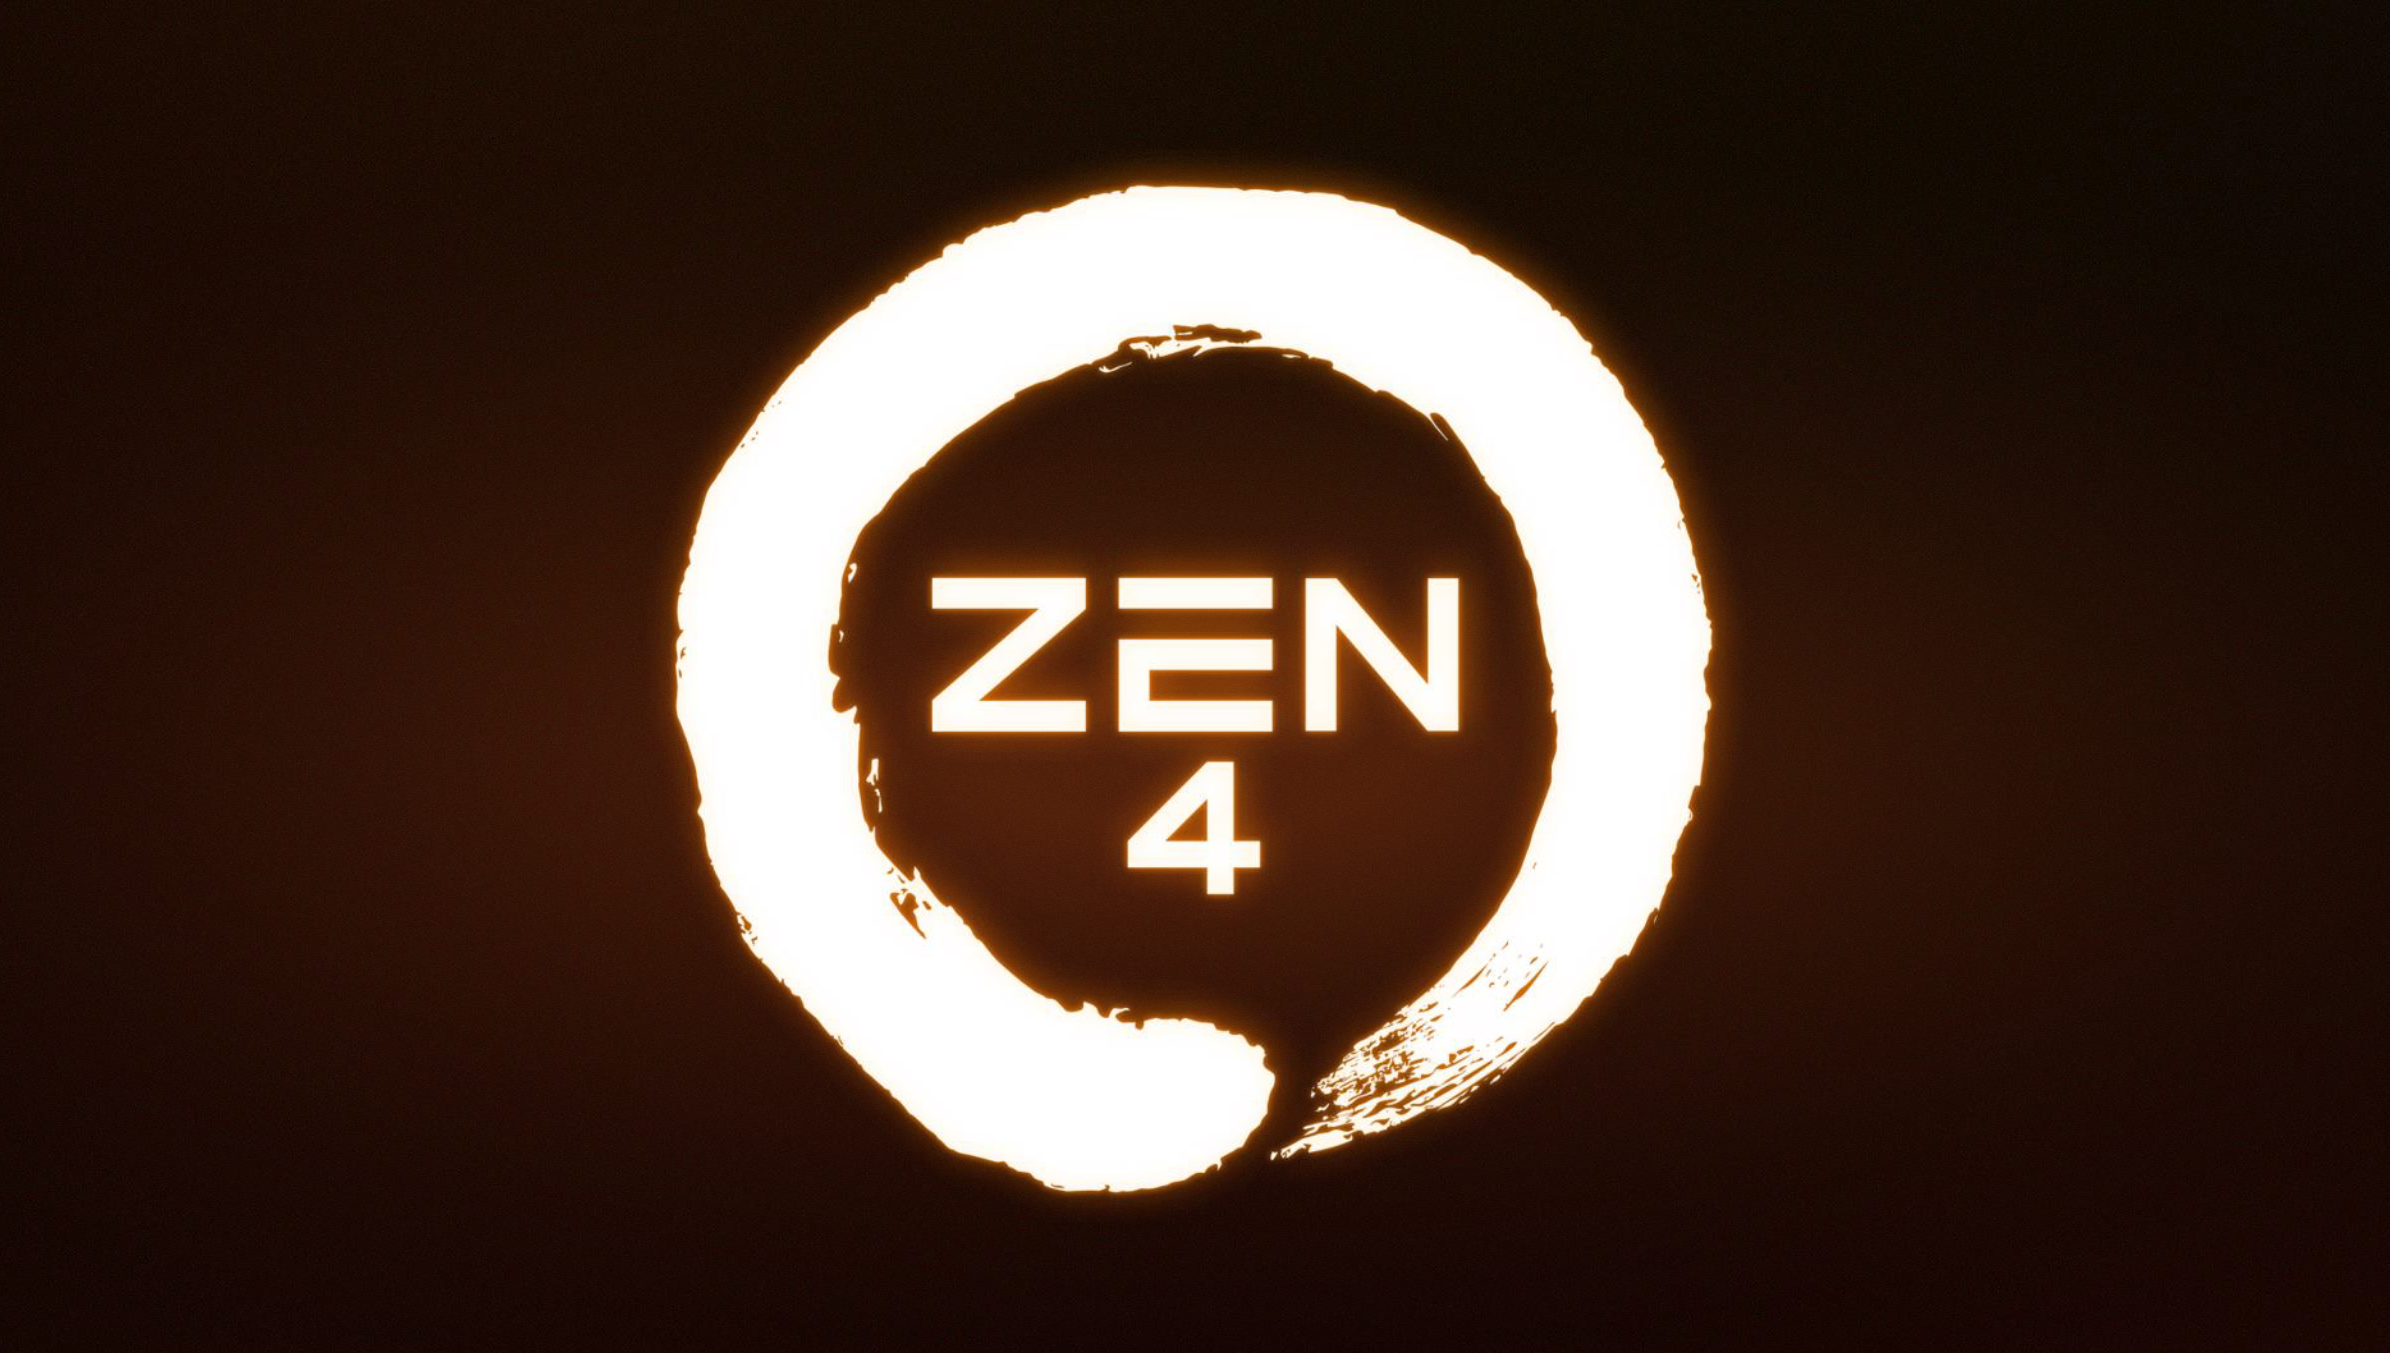 amd zen 4 gaming